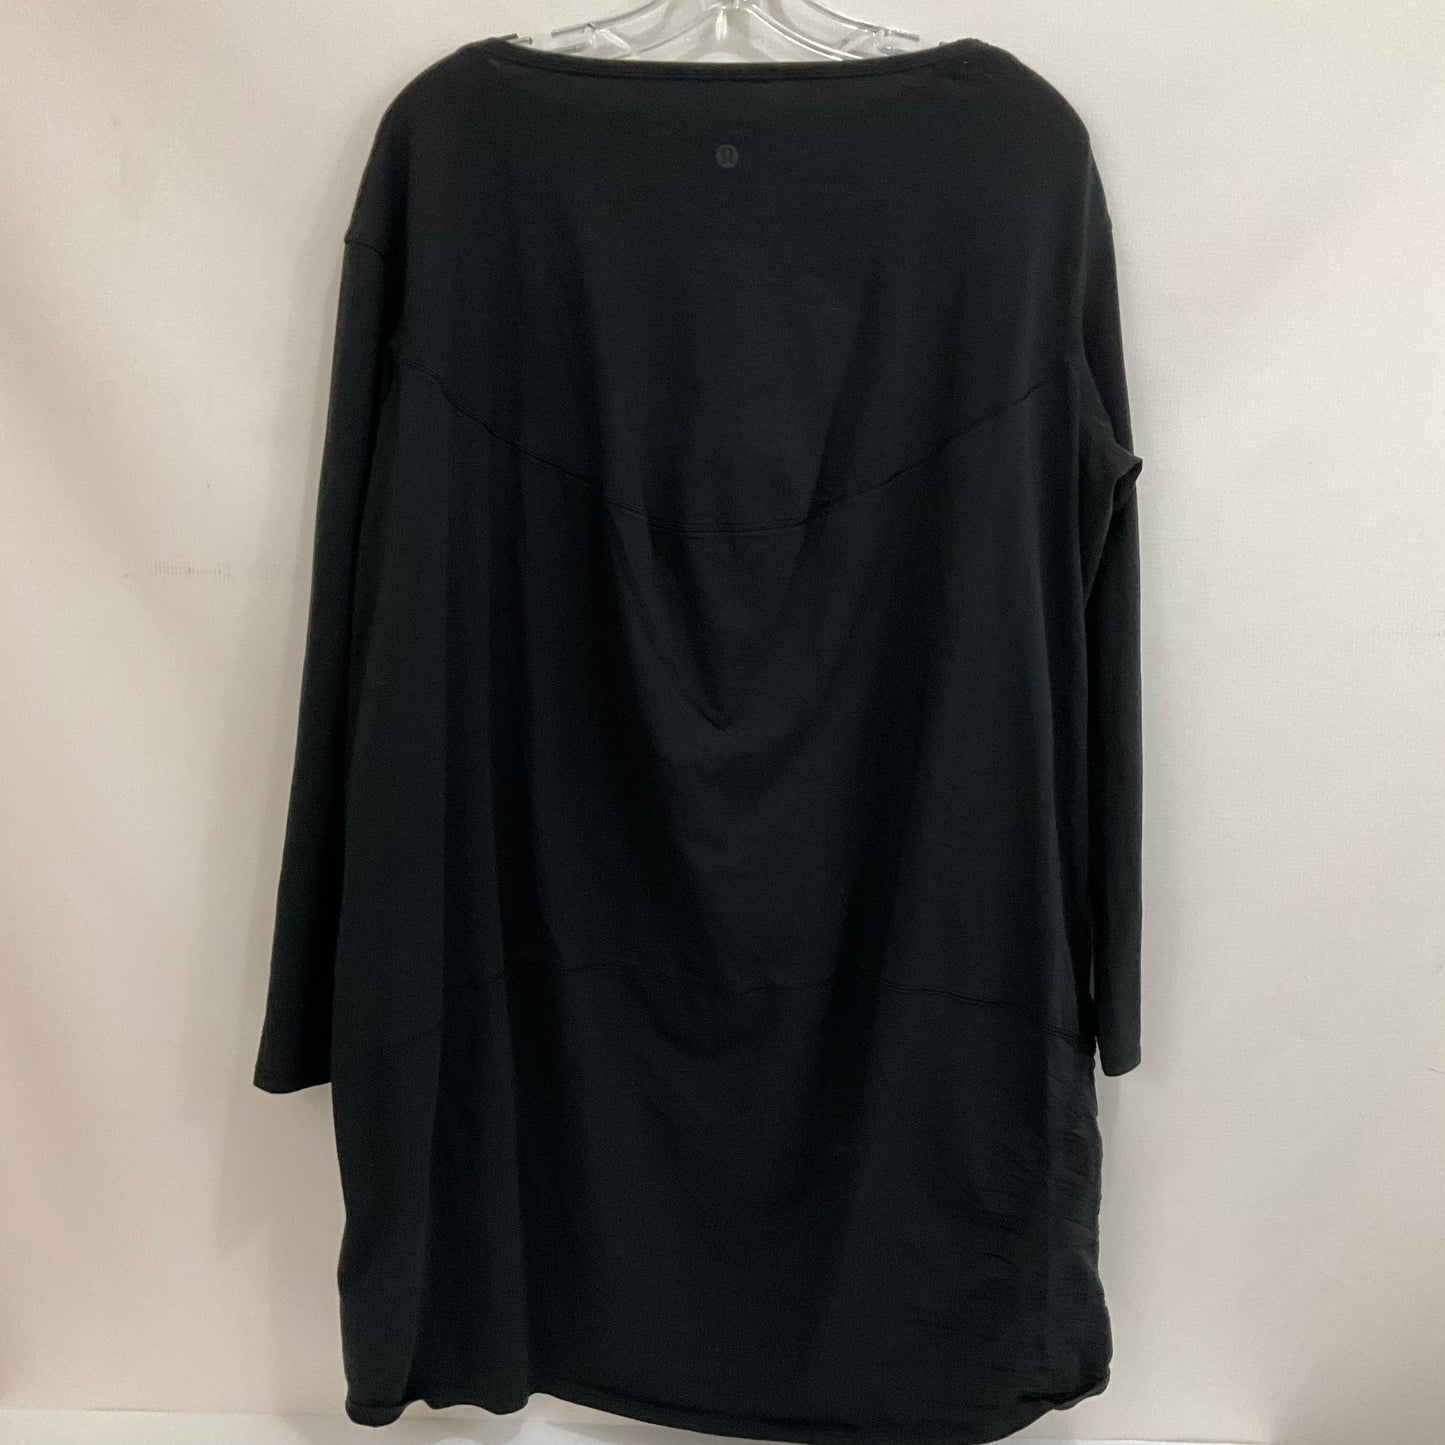 Black Athletic Dress Lululemon, Size S